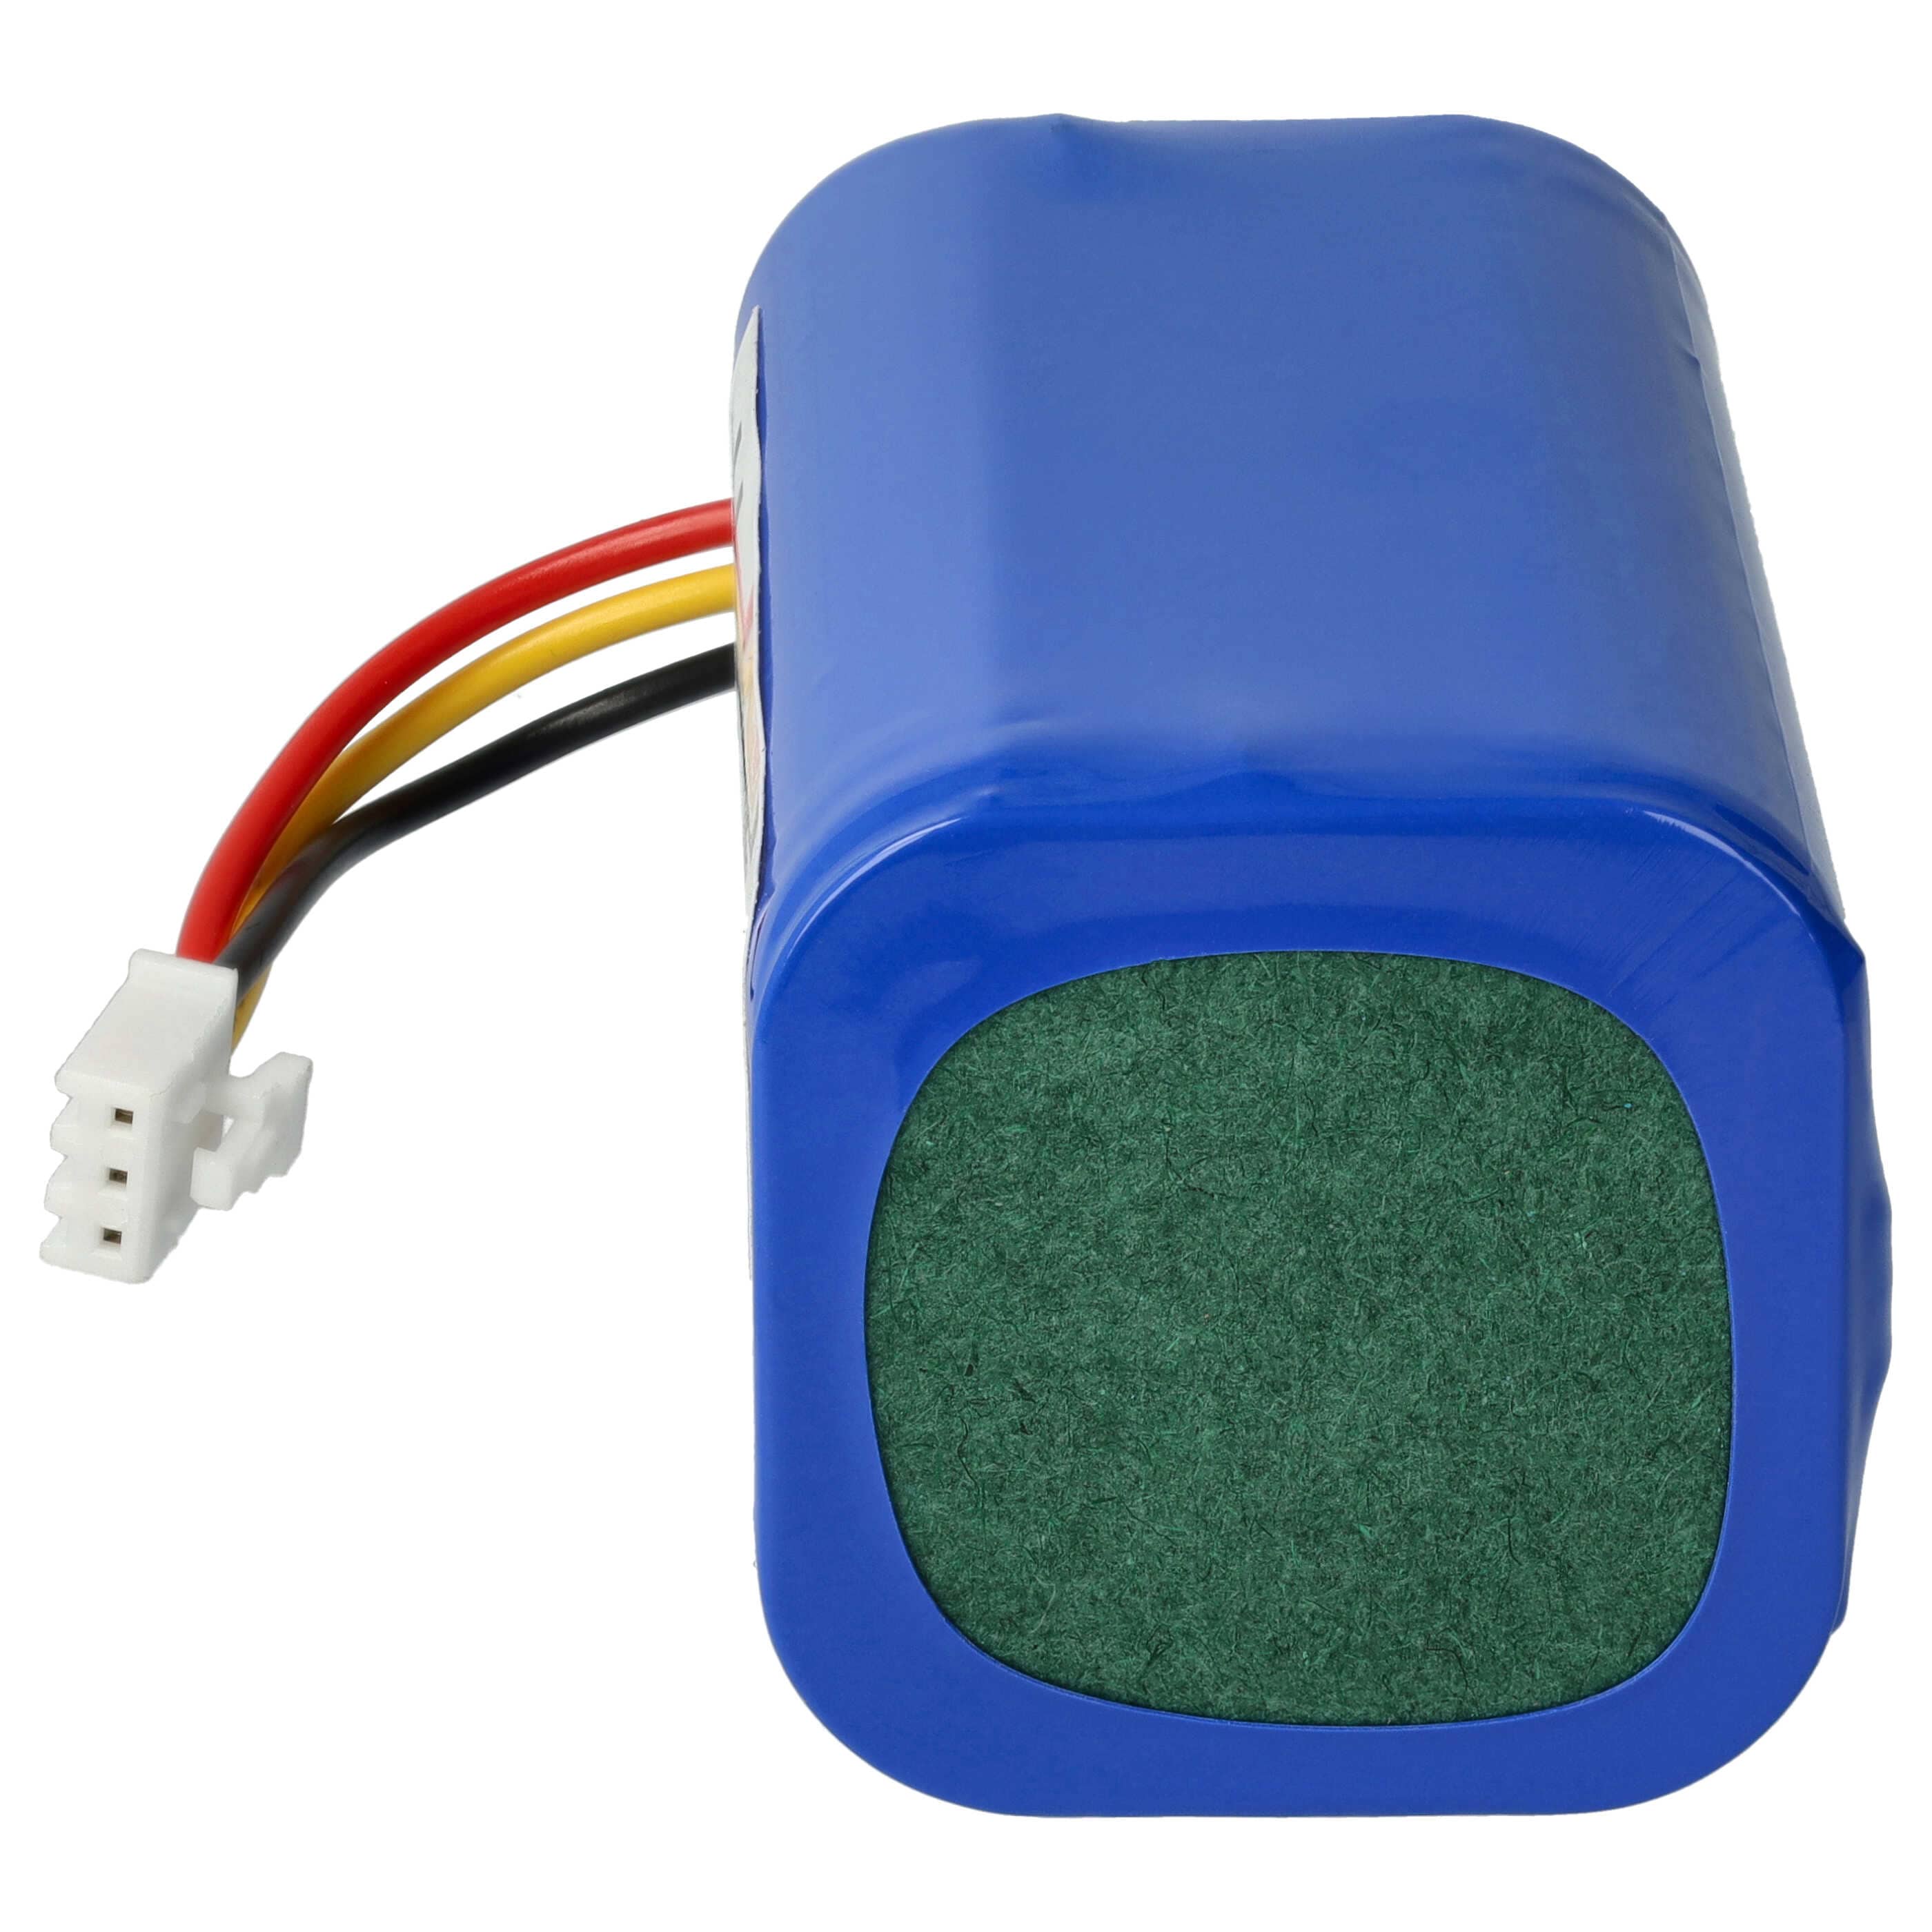 Batterie remplace Blaupunkt 6.60.40.02-0, D071-INR-CH-4S1P pour robot aspirateur - 3200mAh 14,4V Li-ion